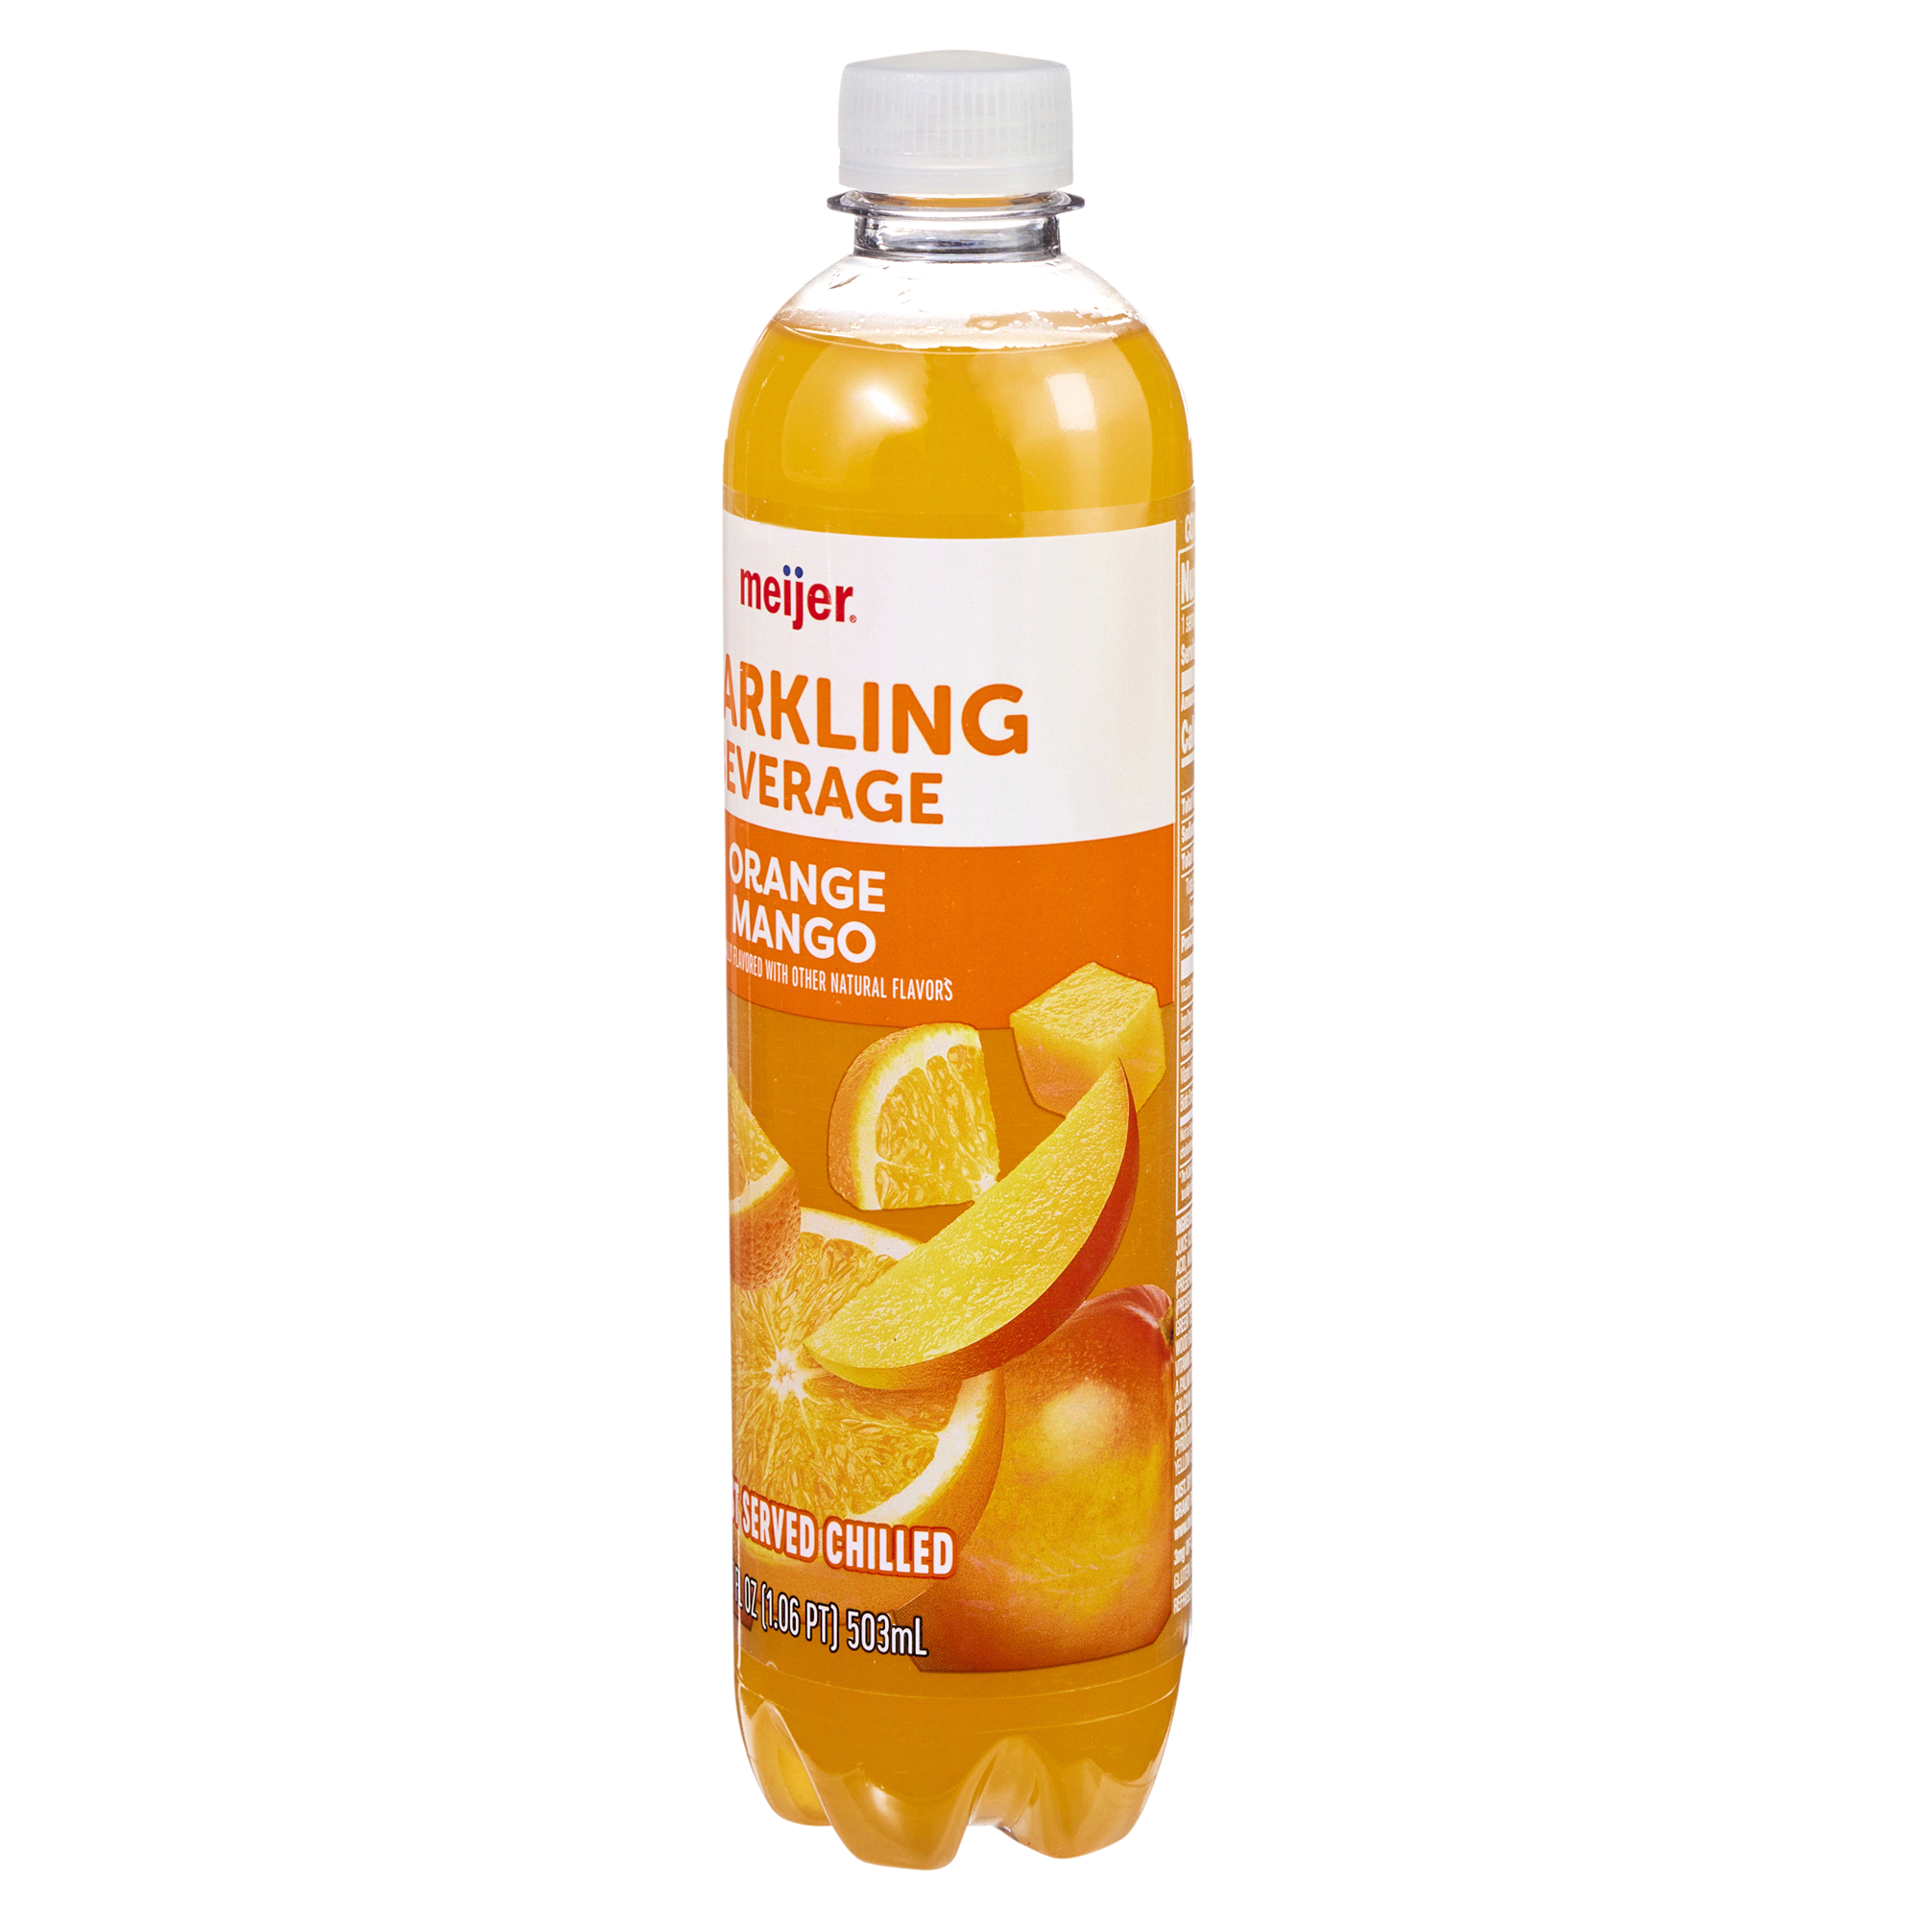 slide 9 of 29, Meijer Sparkling Orange Mango Beverage - 17 fl oz, 17 fl oz